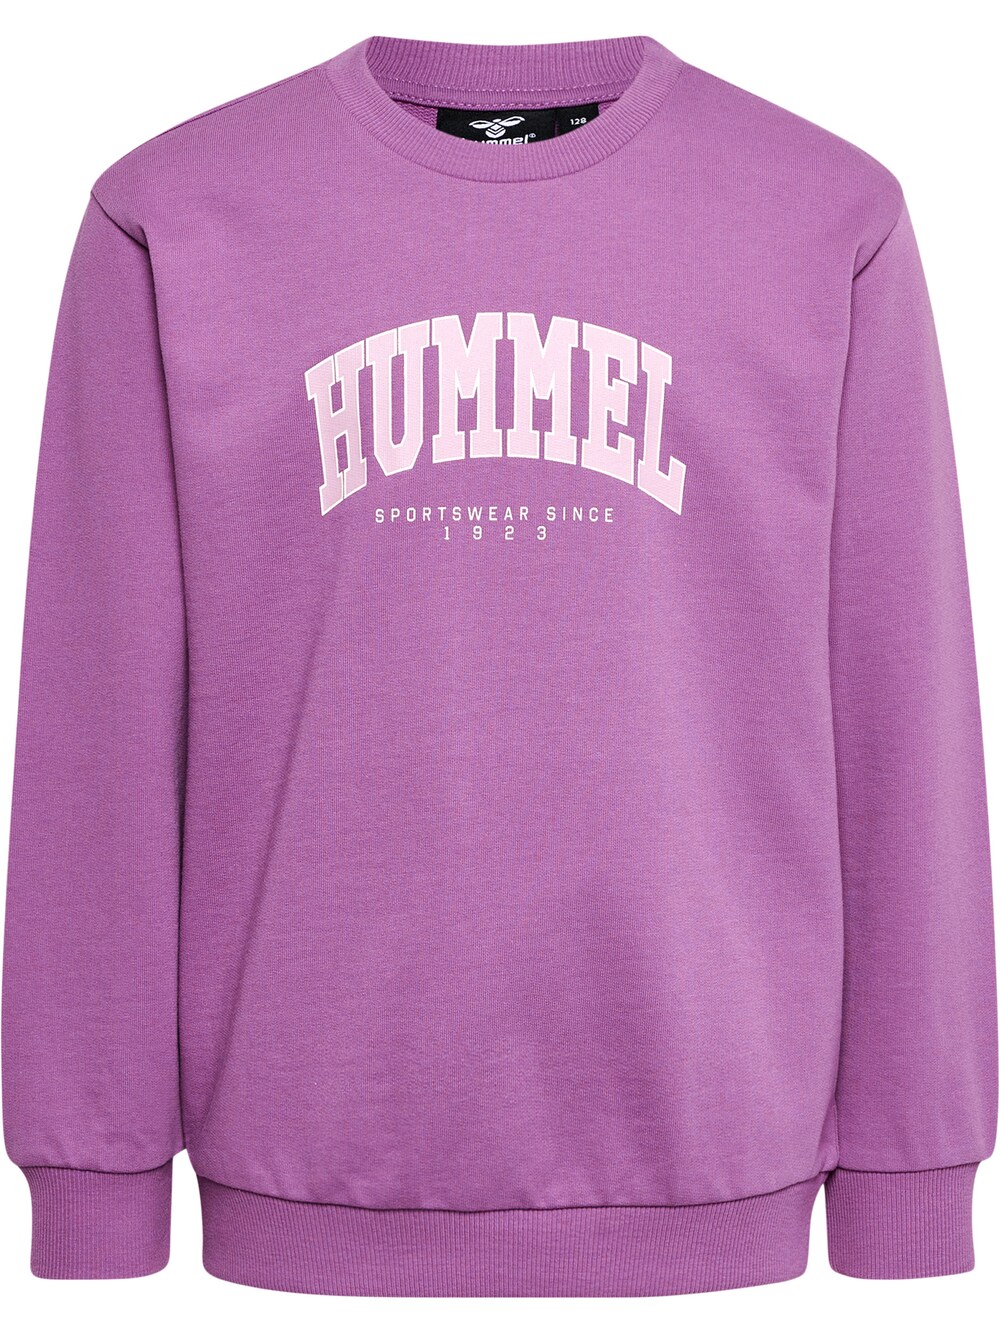 Спортивная толстовка Hummel FAST, фиолетовый толстовка hummel fast lime фиолетовый